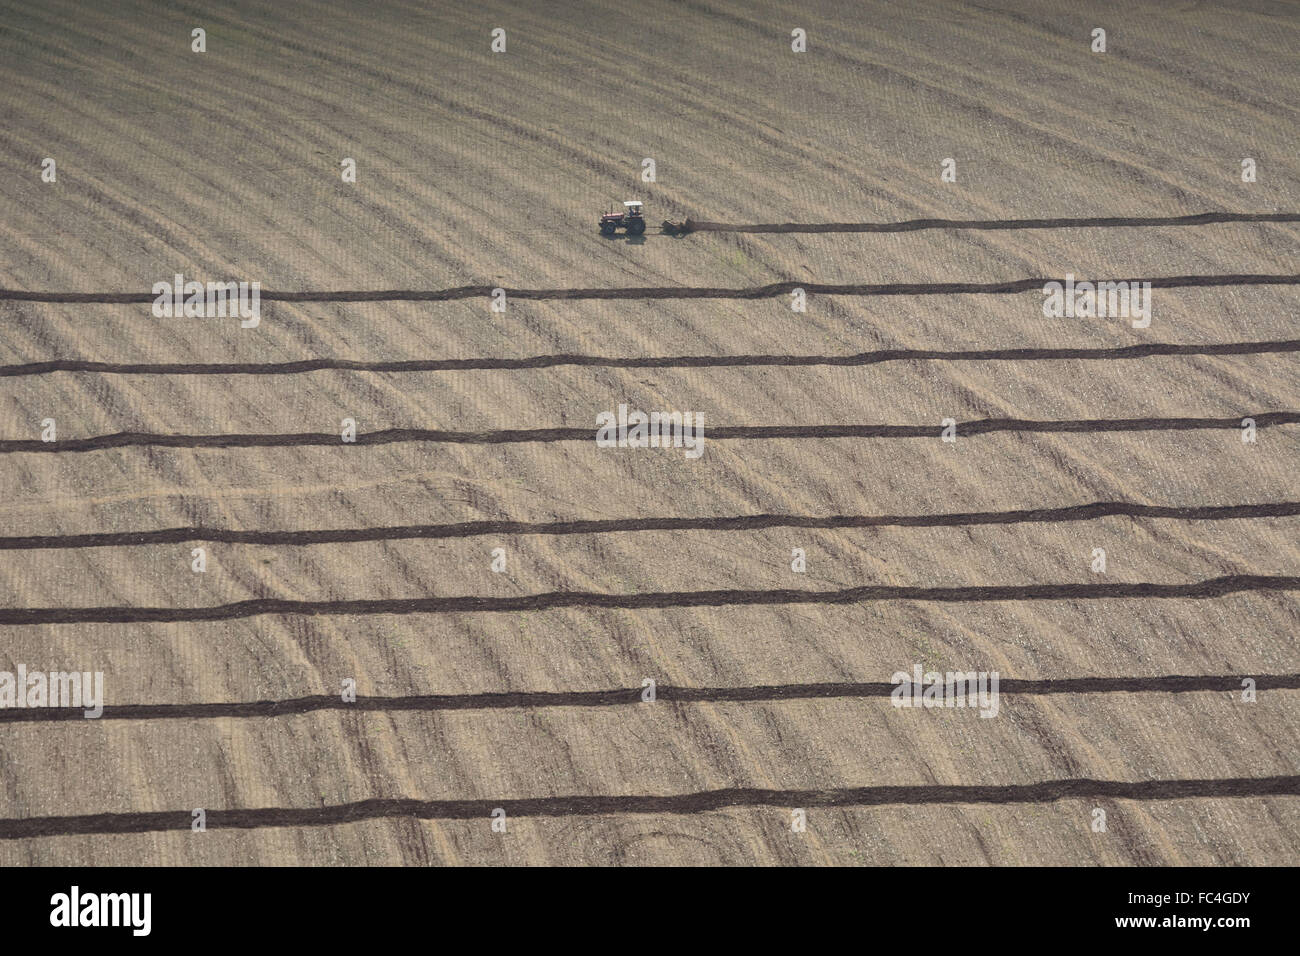 Vista aerea di macchine agricole prepara il terreno per la semina del mais Foto Stock